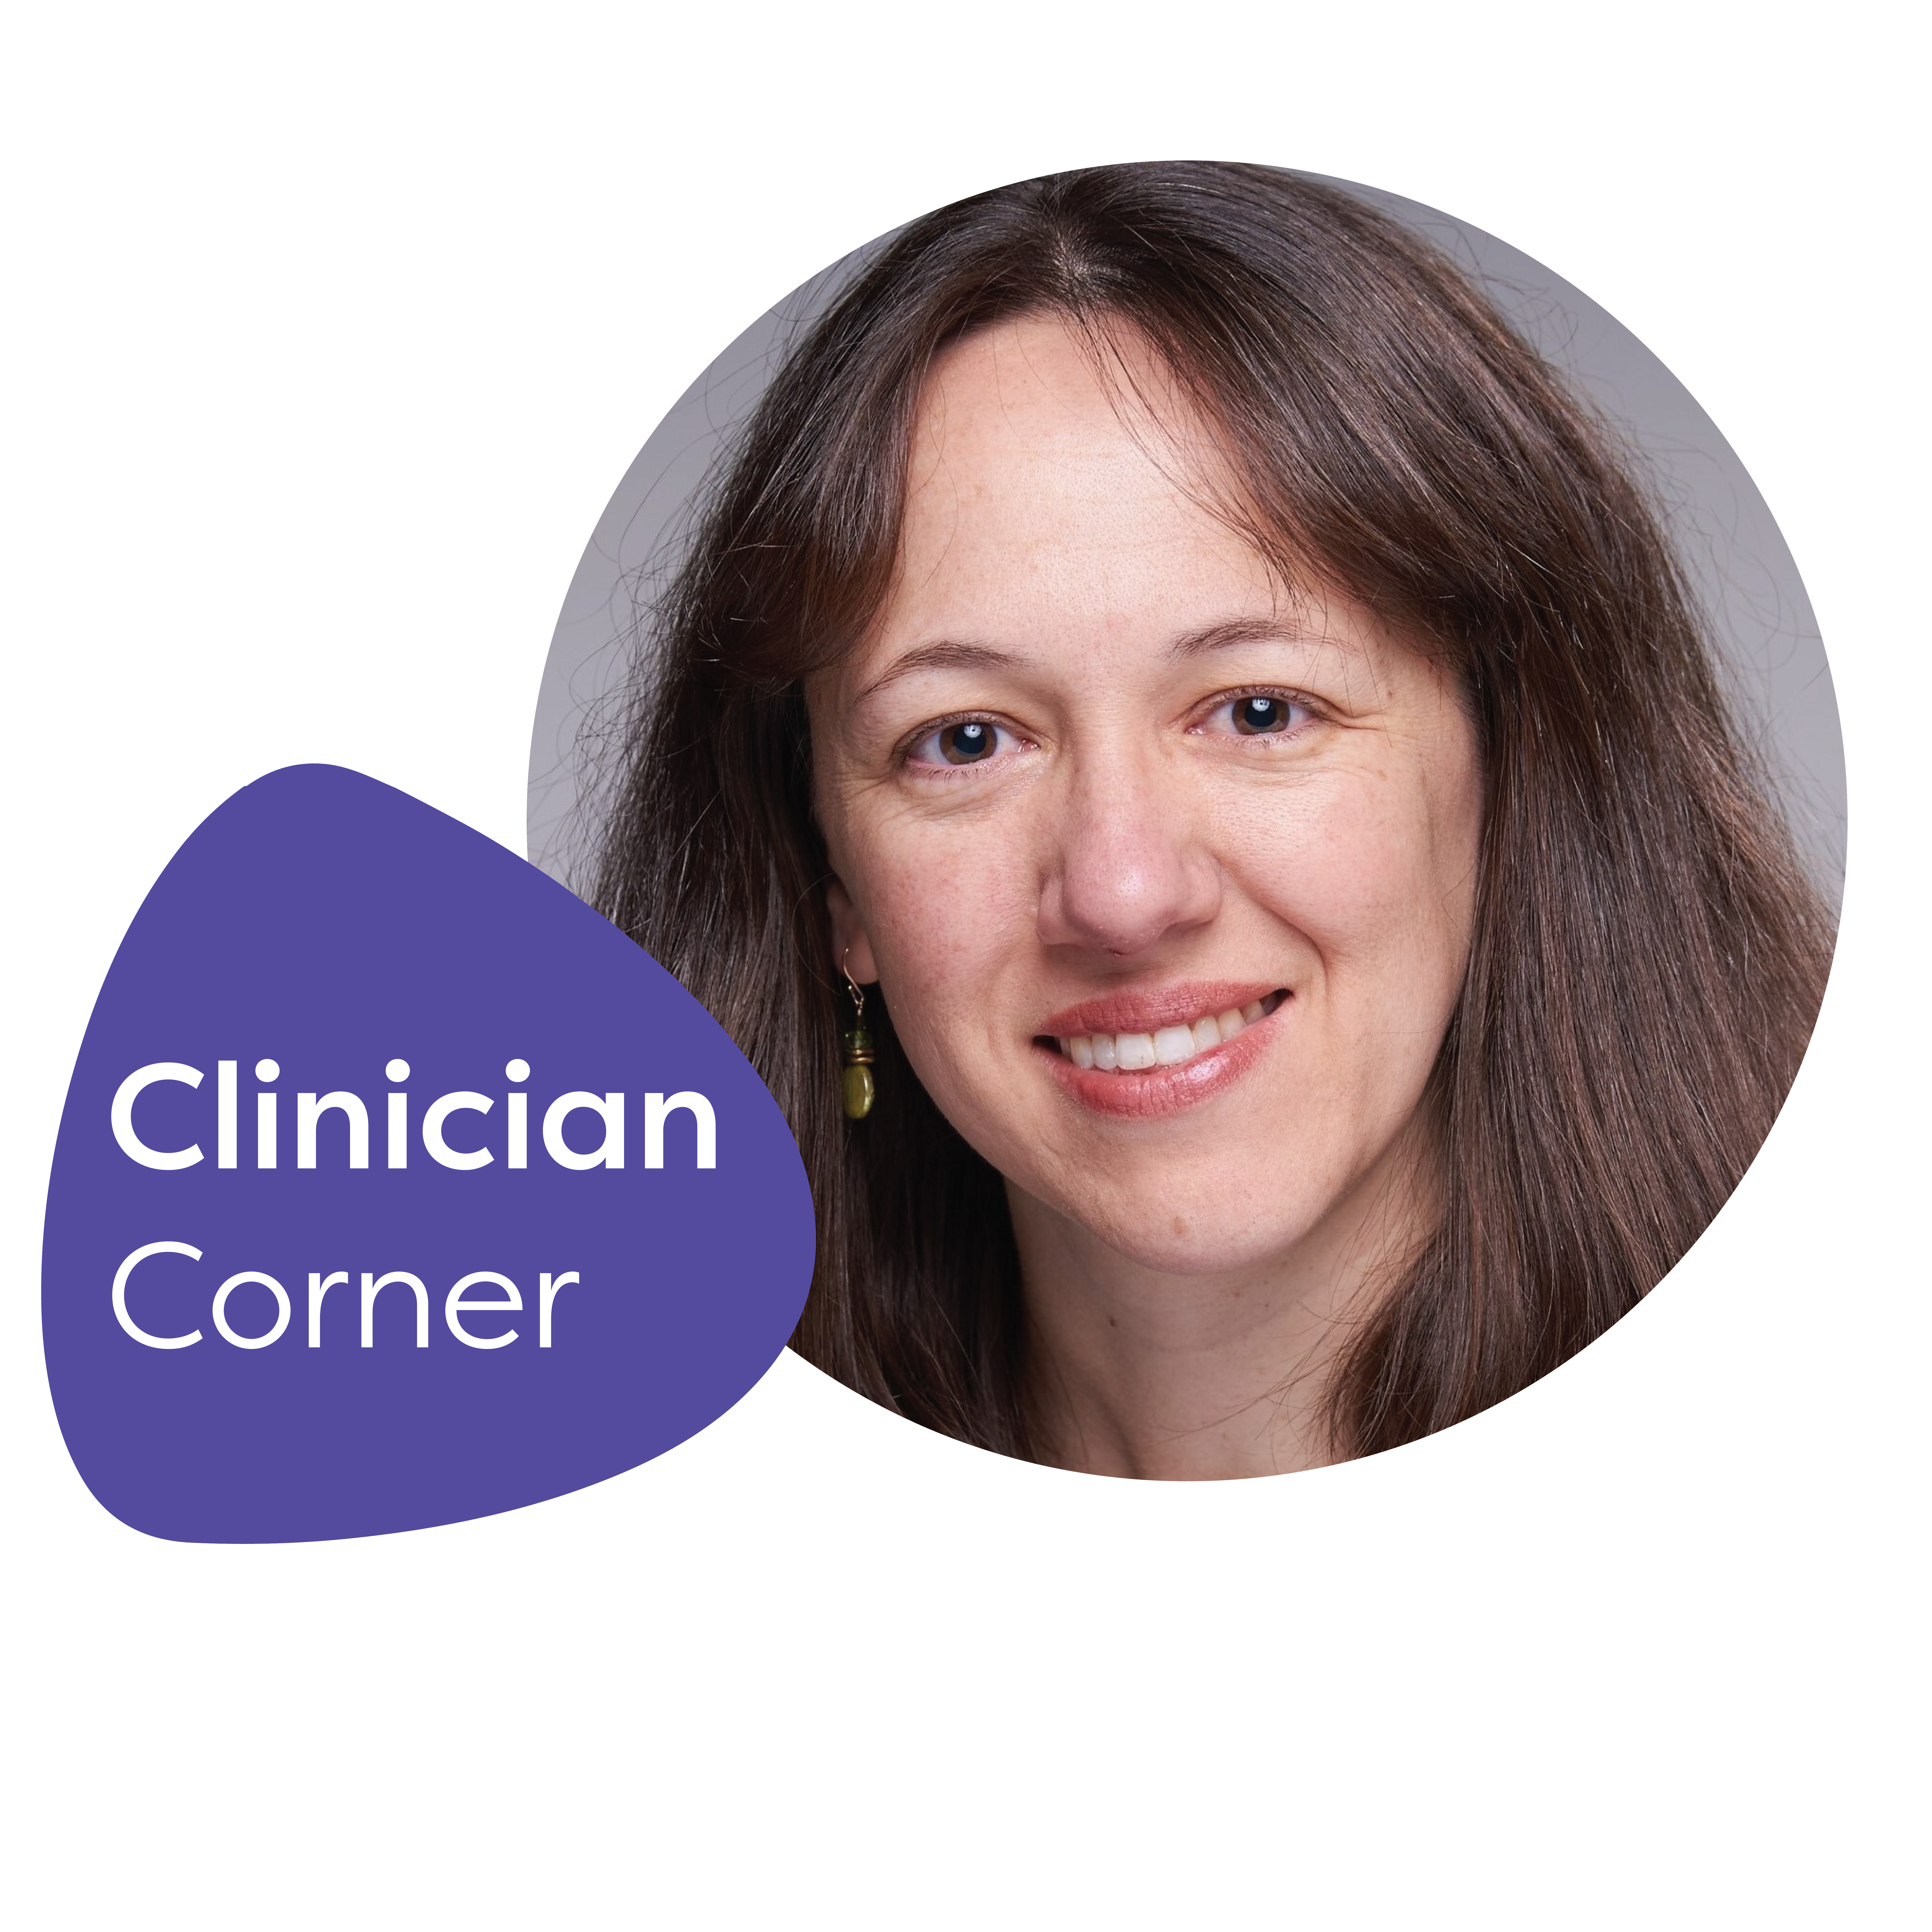 Clinician Corner: Meet Dr. Isabel Norian, MD